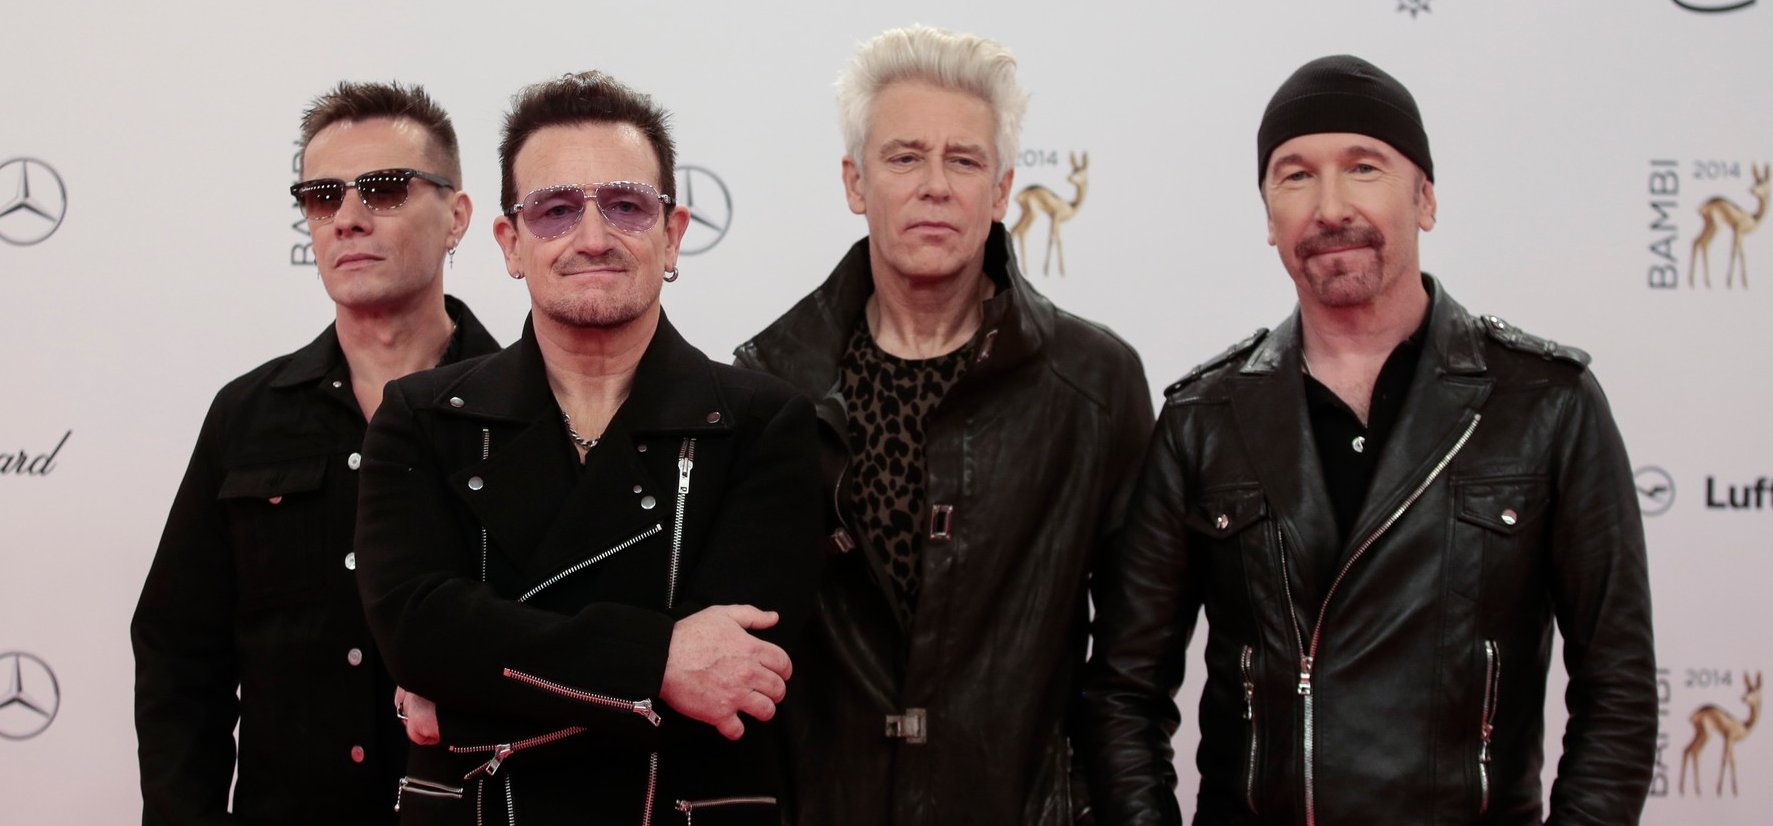 Így néz ki most a U2 legendás frontembere